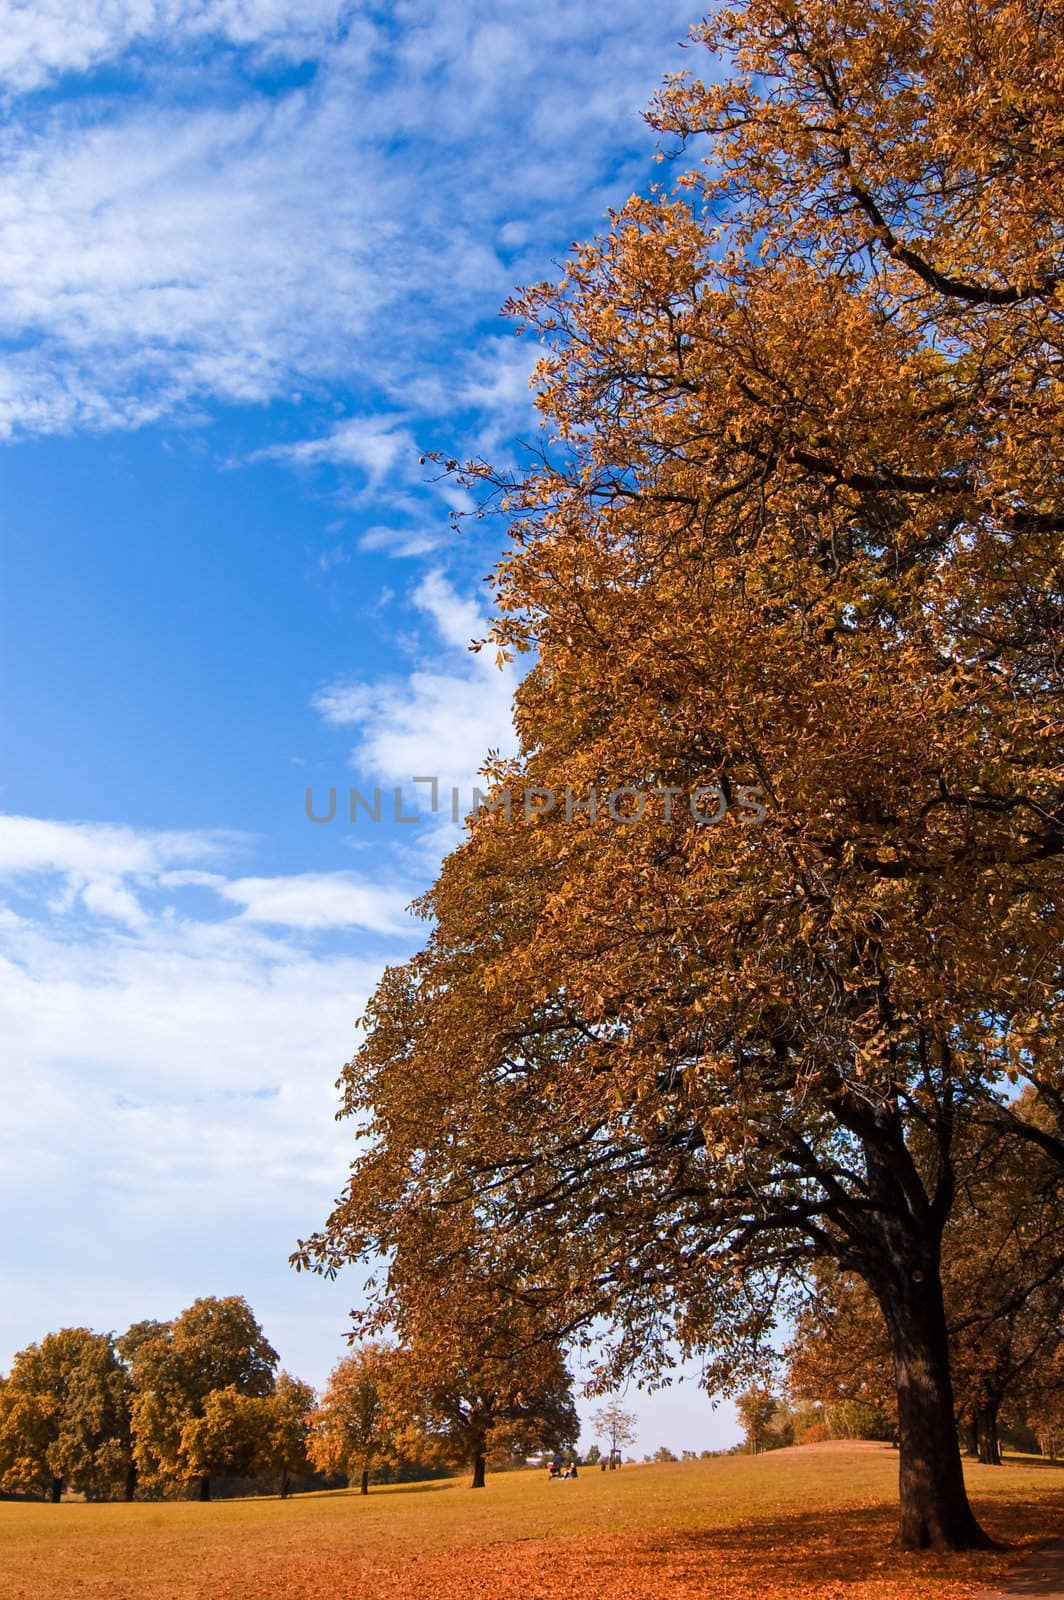 beautiful autumn landscape is shown